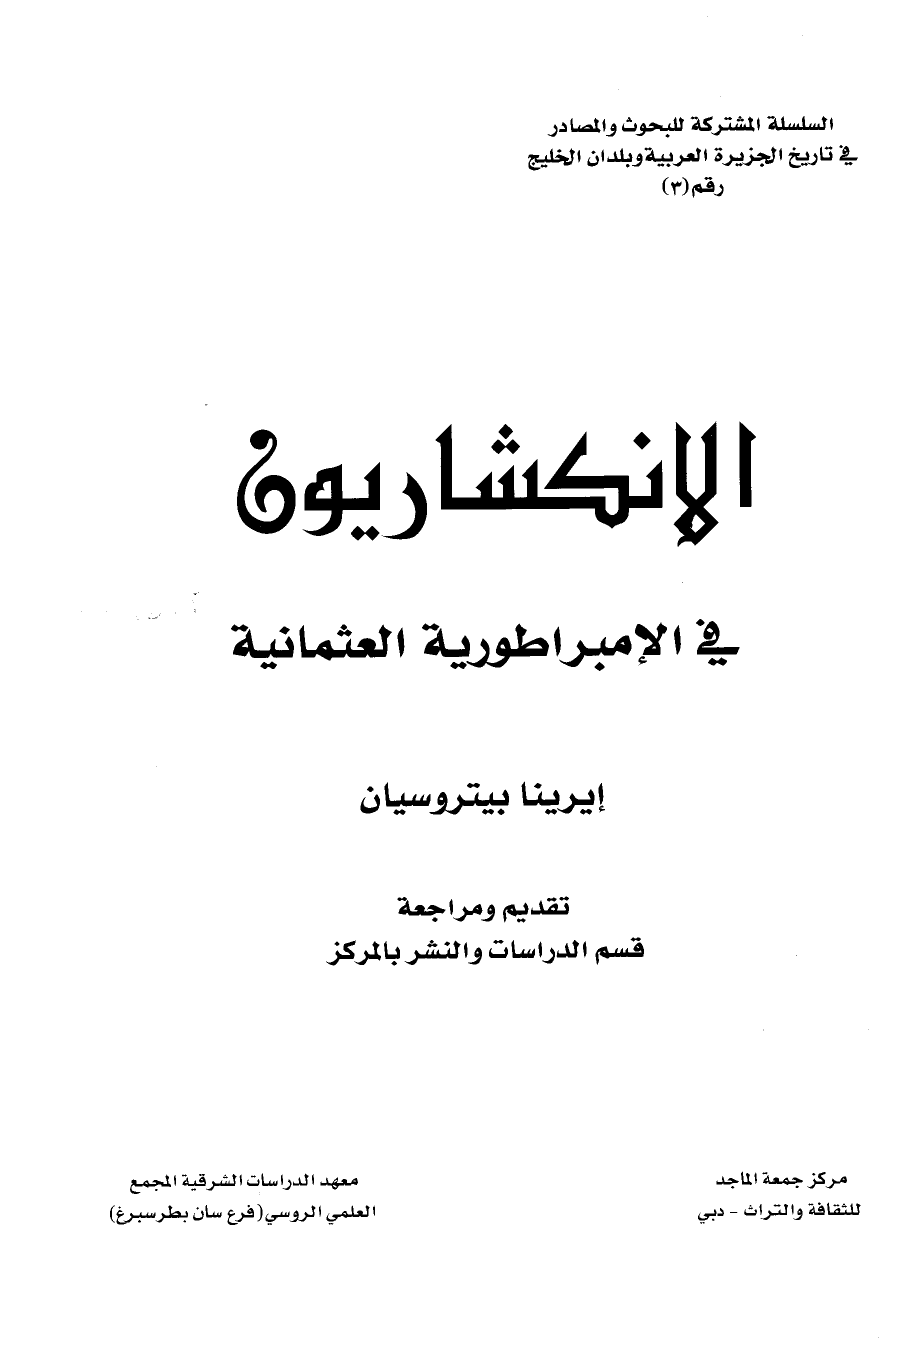 تنزيل وتحميل كتاِب الإنكشاريون في الإمبرطورية العثمانية pdf برابط مباشر مجاناً